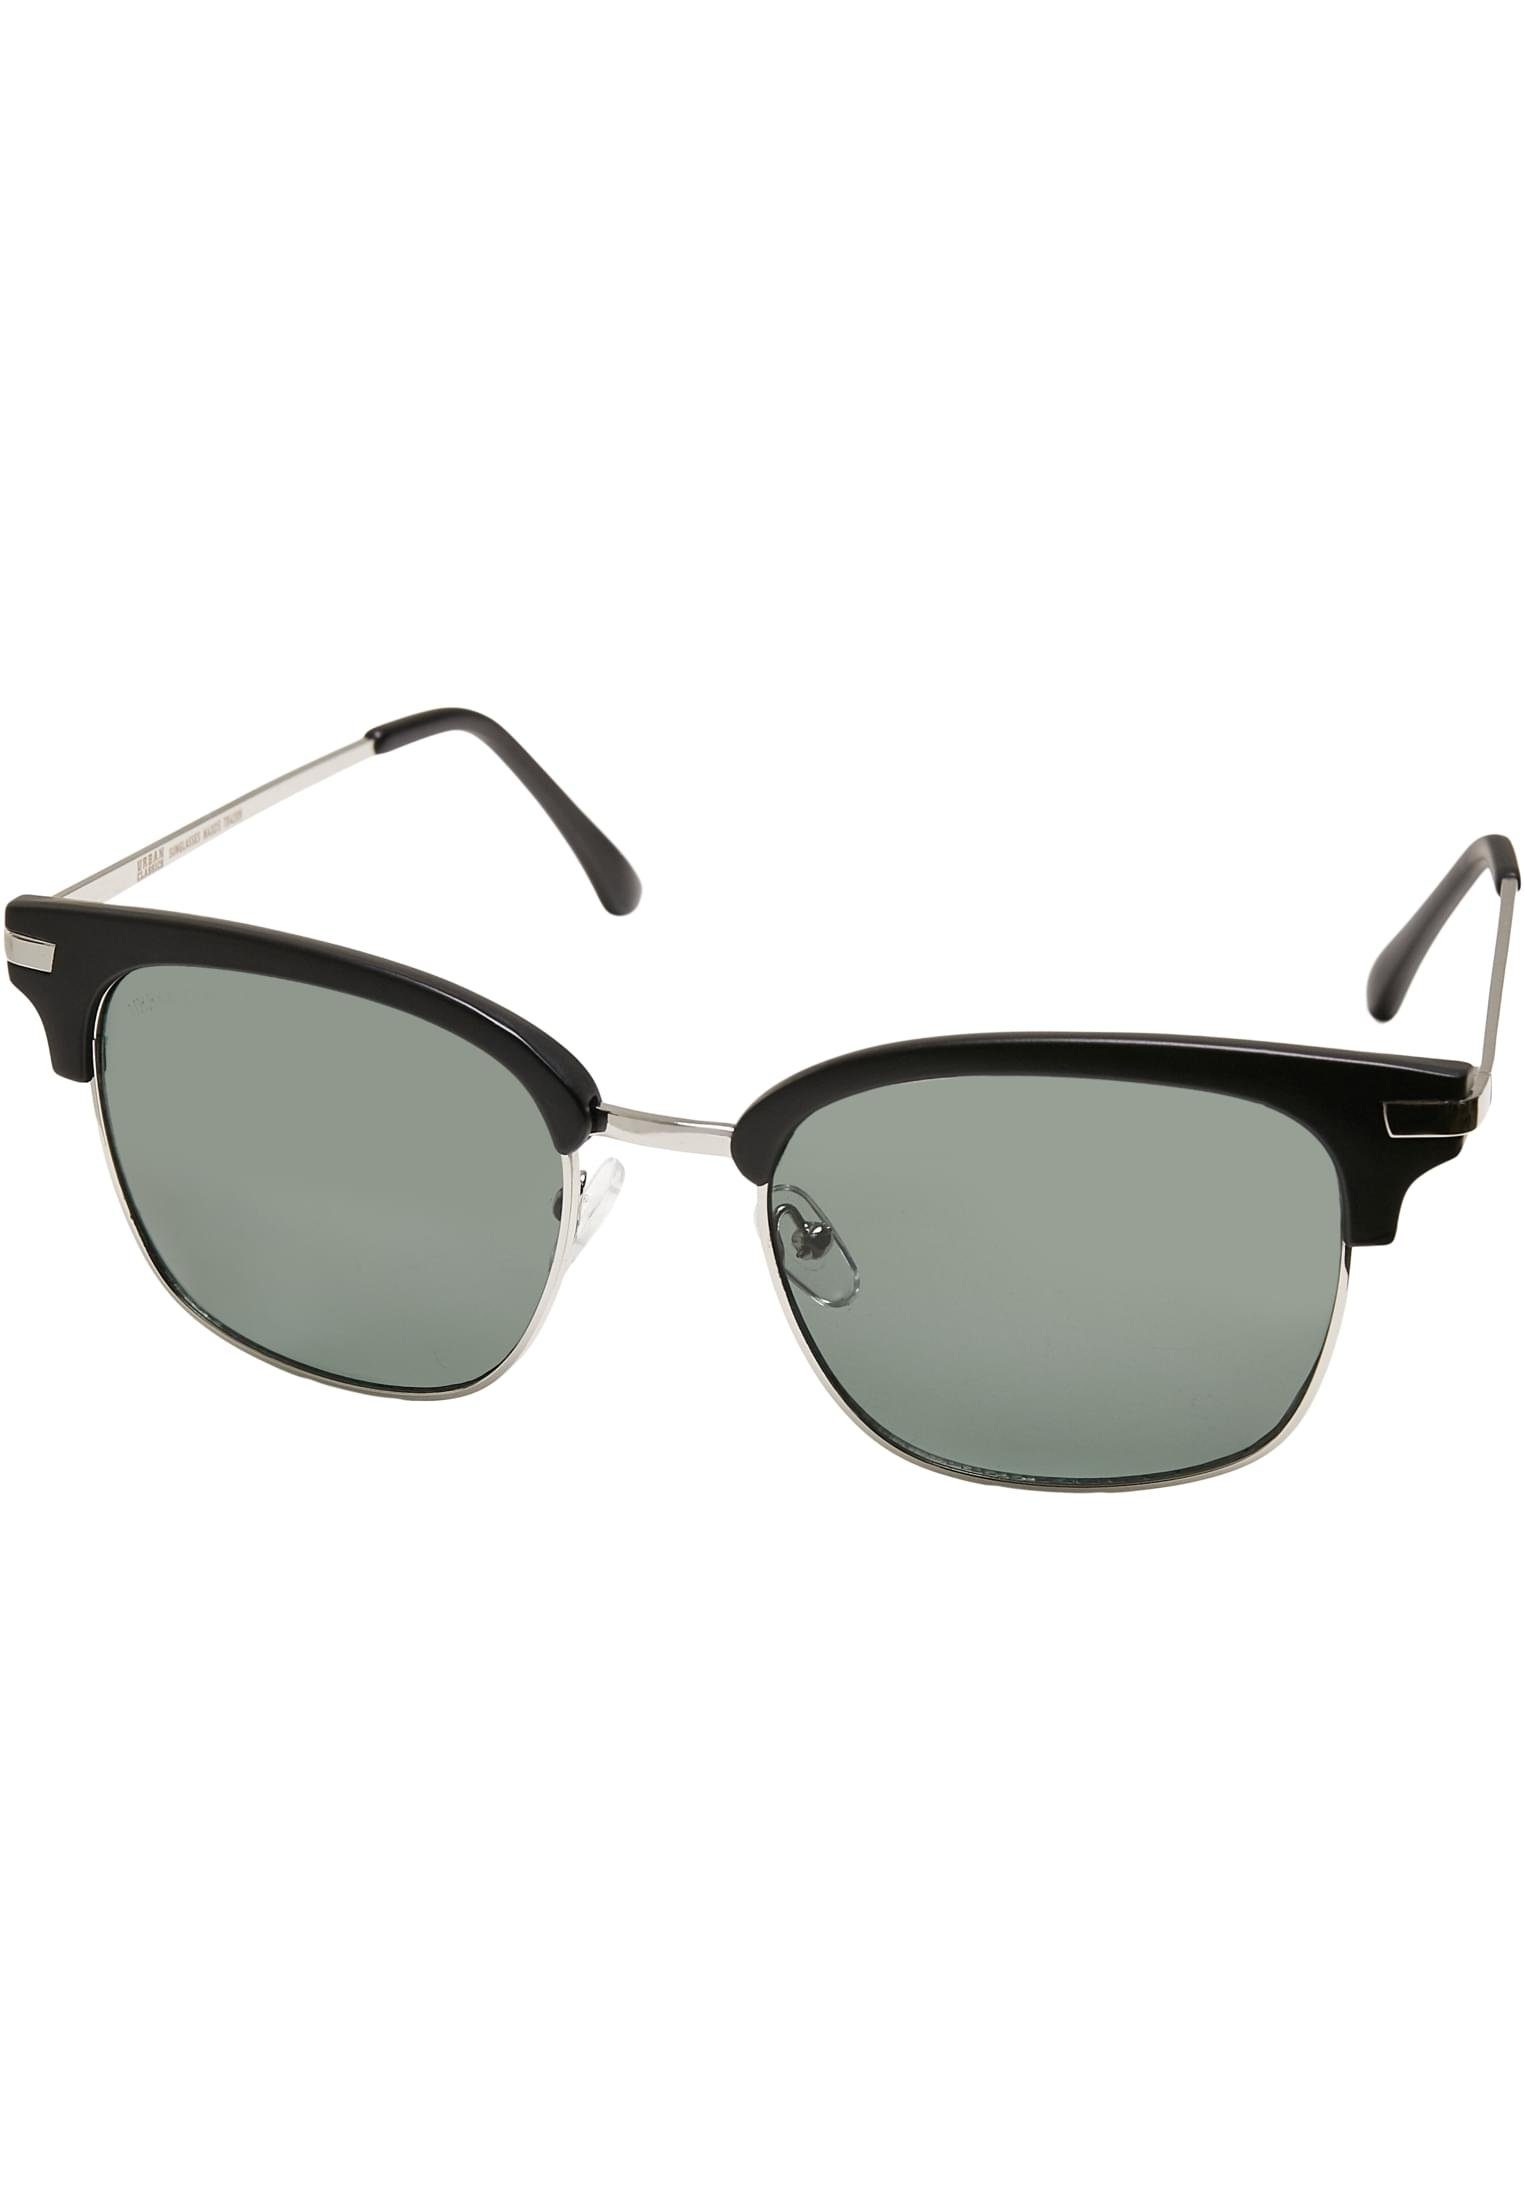 Sunglasses Crete Unisex CLASSICS URBAN Sonnenbrille